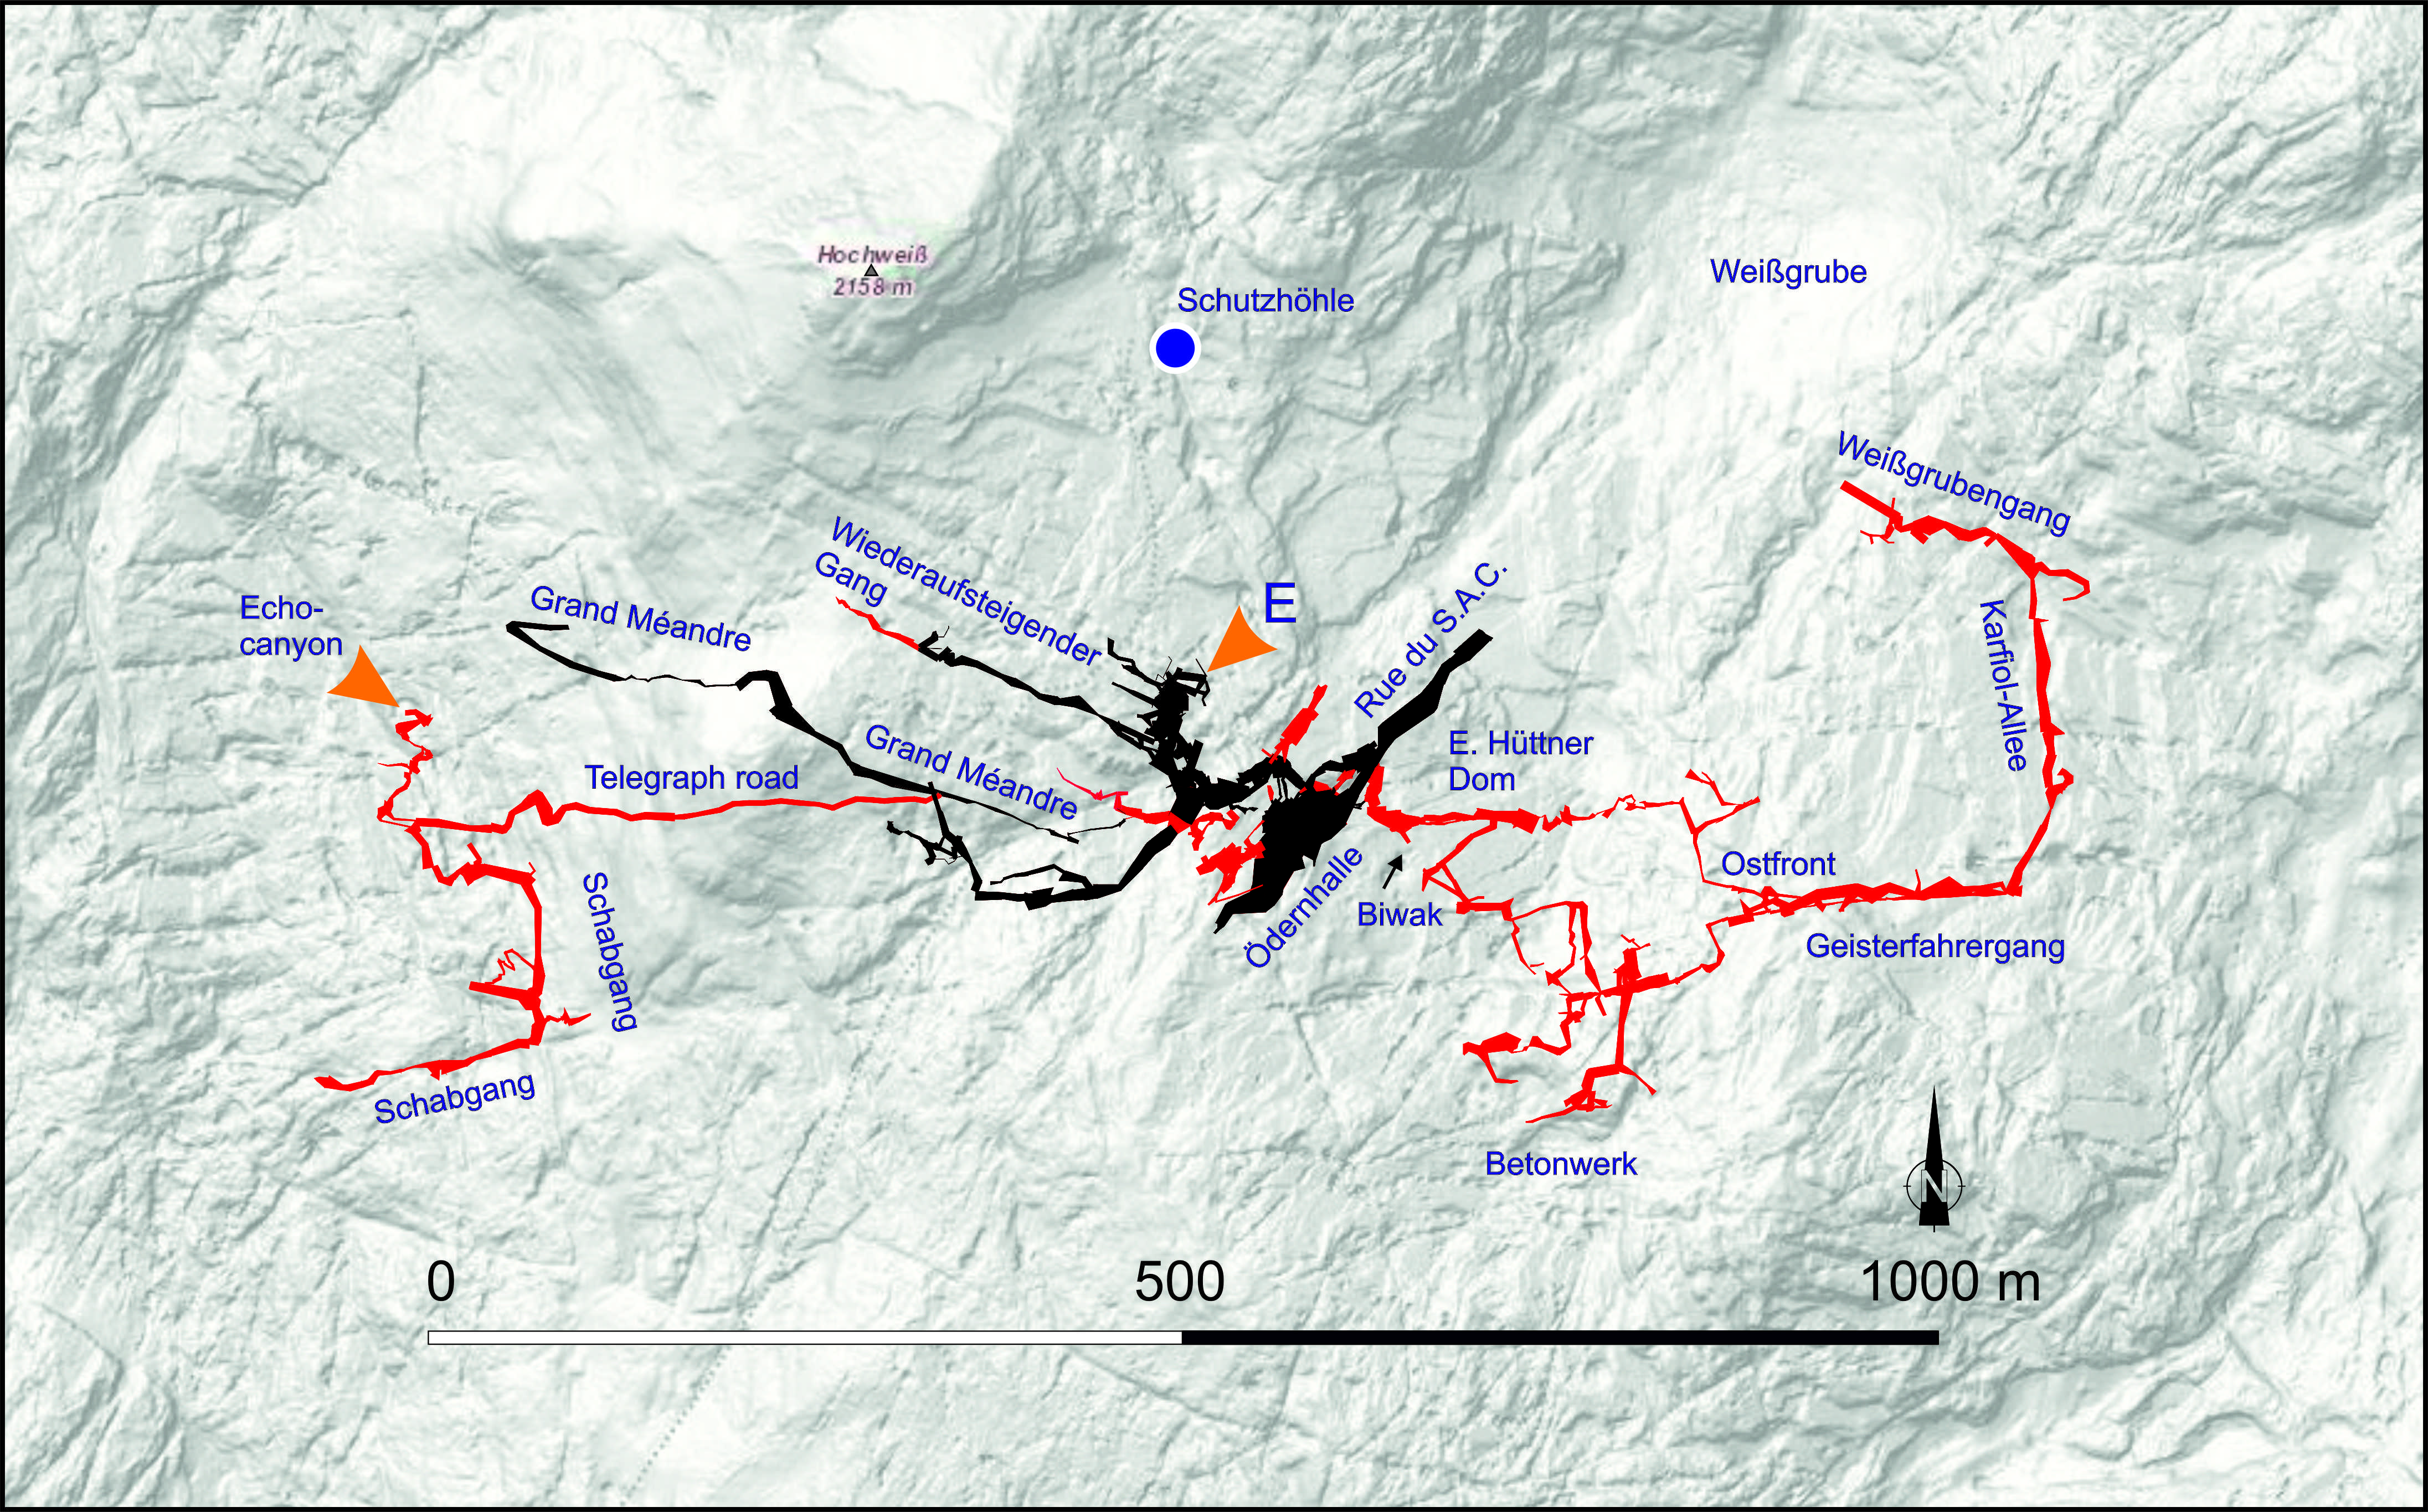 Übersichtsgrundriss der Wildbaderhöhle. Die in roter Farbe dargestellten Höhlenteile wurden im Zuge der neuen Forschungen entdeckt. Die in schwarz dargestellten Teile waren bereits vorher bekannt, aber teilweise noch nicht vermessen.